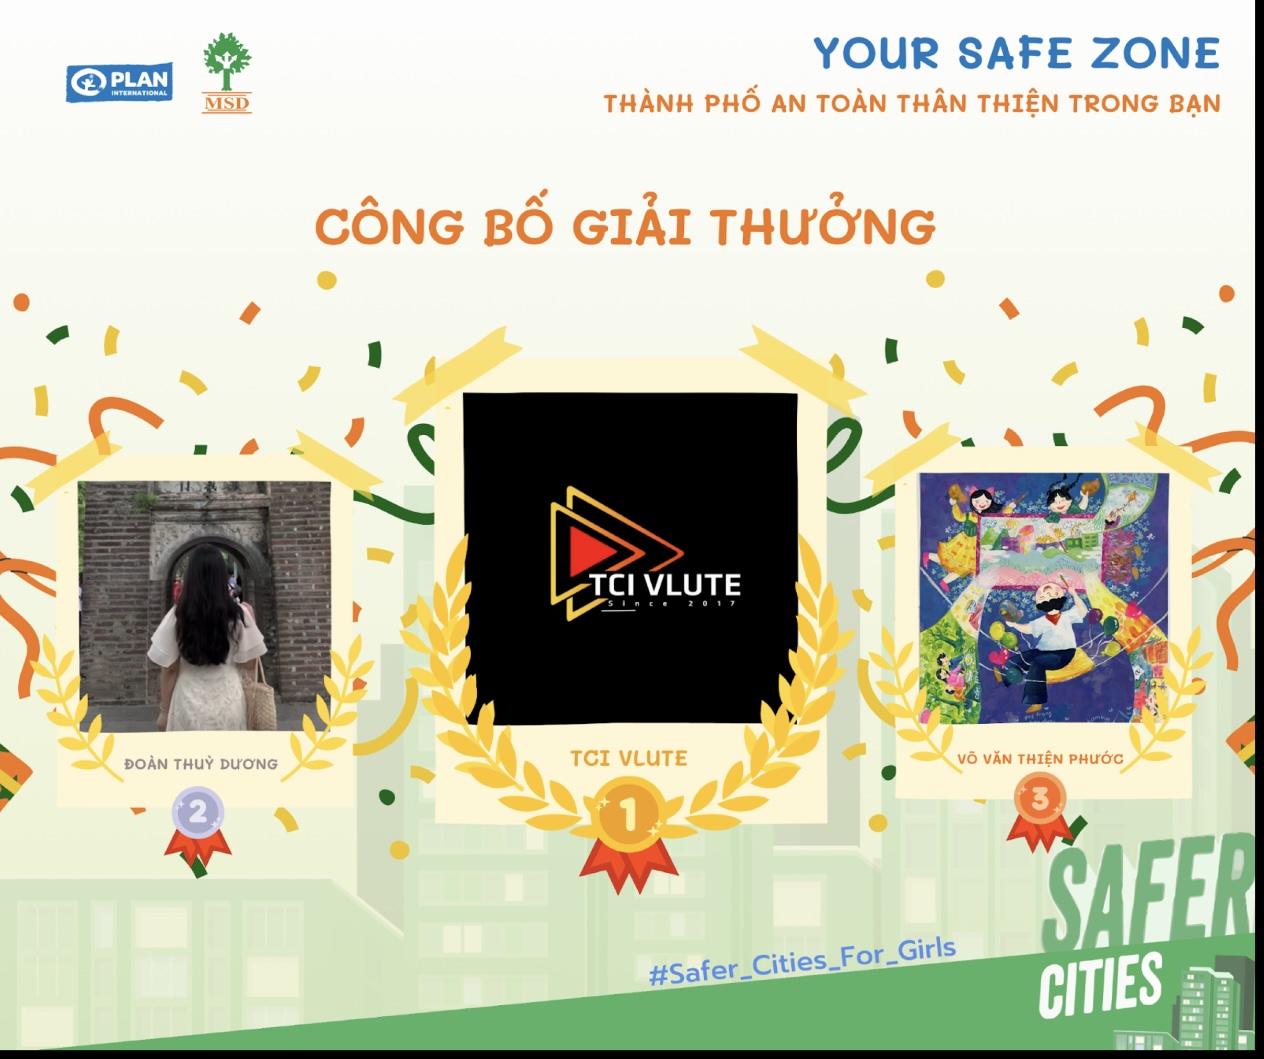 Trường Đại học Sư phạm Kỹ thuật Vĩnh Long đạt giải nhất cuộc thi “Your Safe Zone – Thành phố an toàn thân thiện trong bạn”